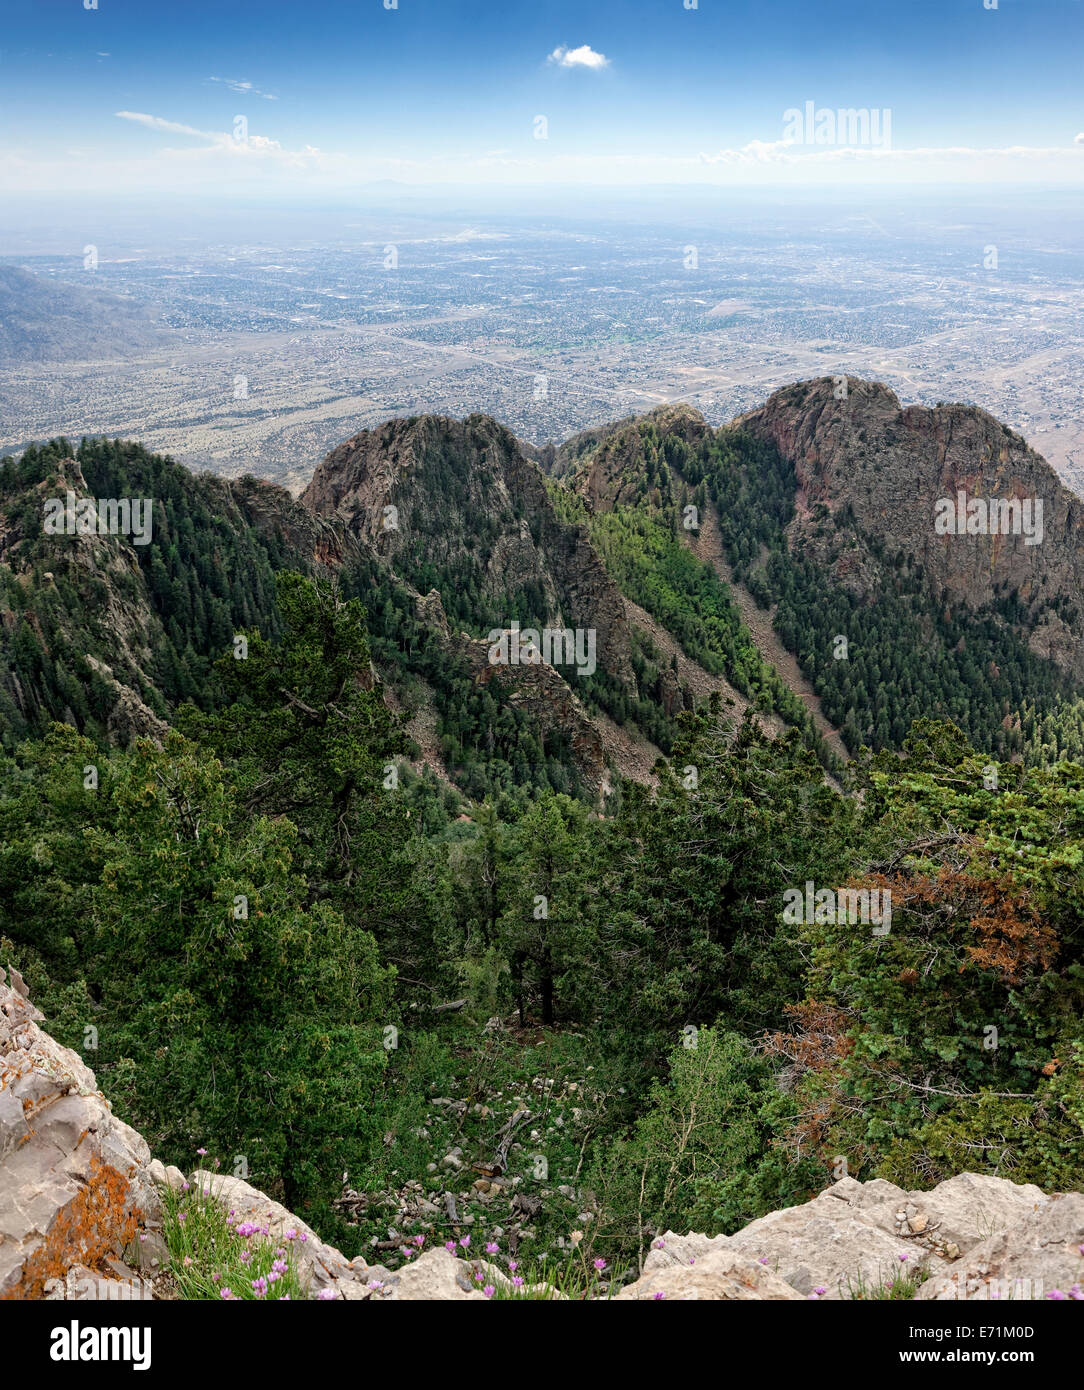 Vista desde el Sandia Peak, Albuquerque, NM Foto de stock